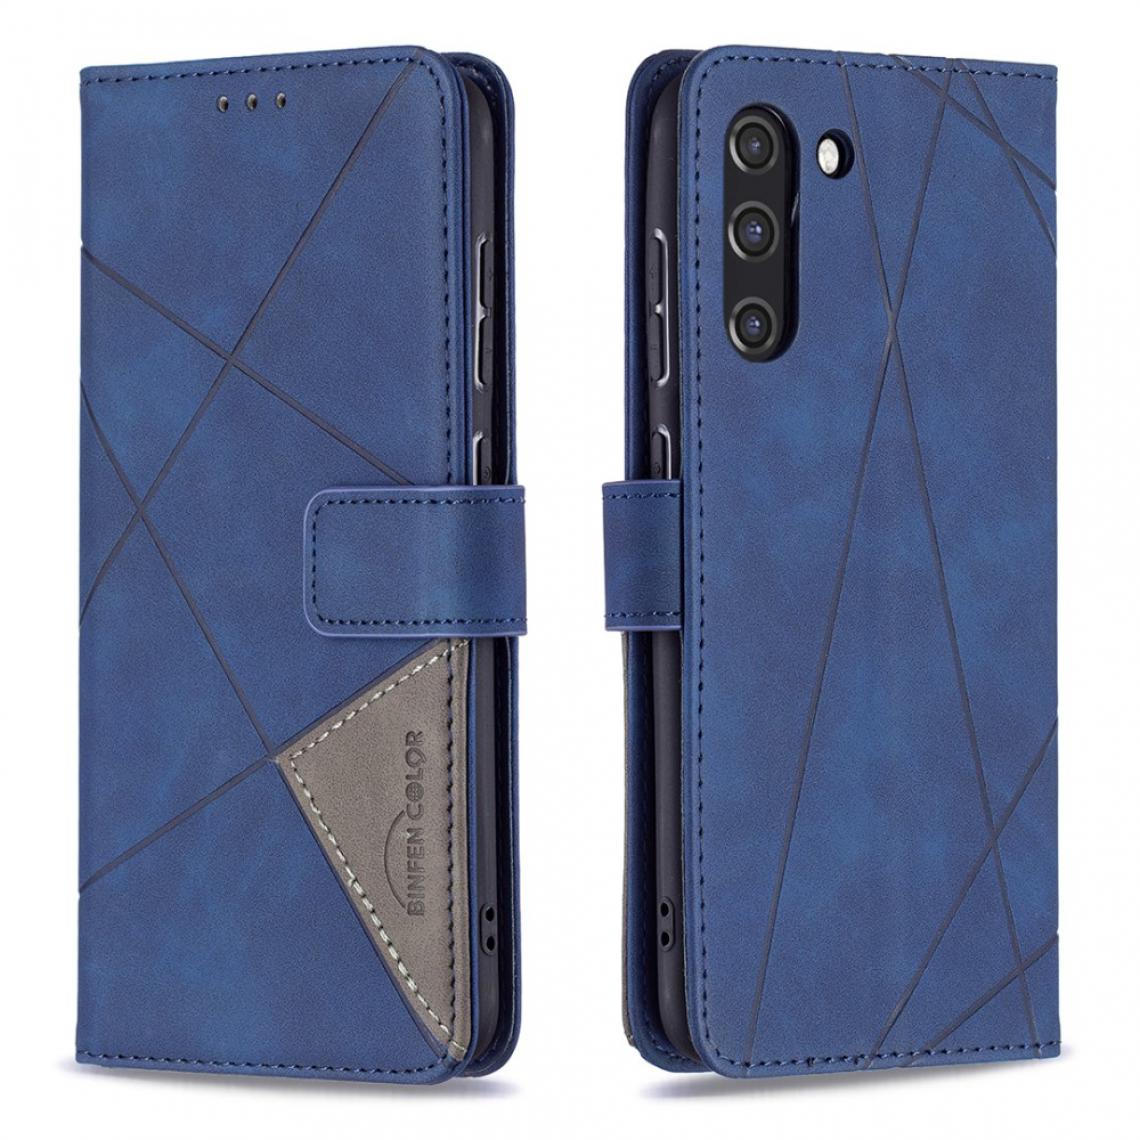 Other - Etui en PU Motif géométrique avec support bleu pour votre Samsung Galaxy S21 FE/S21 Lite - Coque, étui smartphone